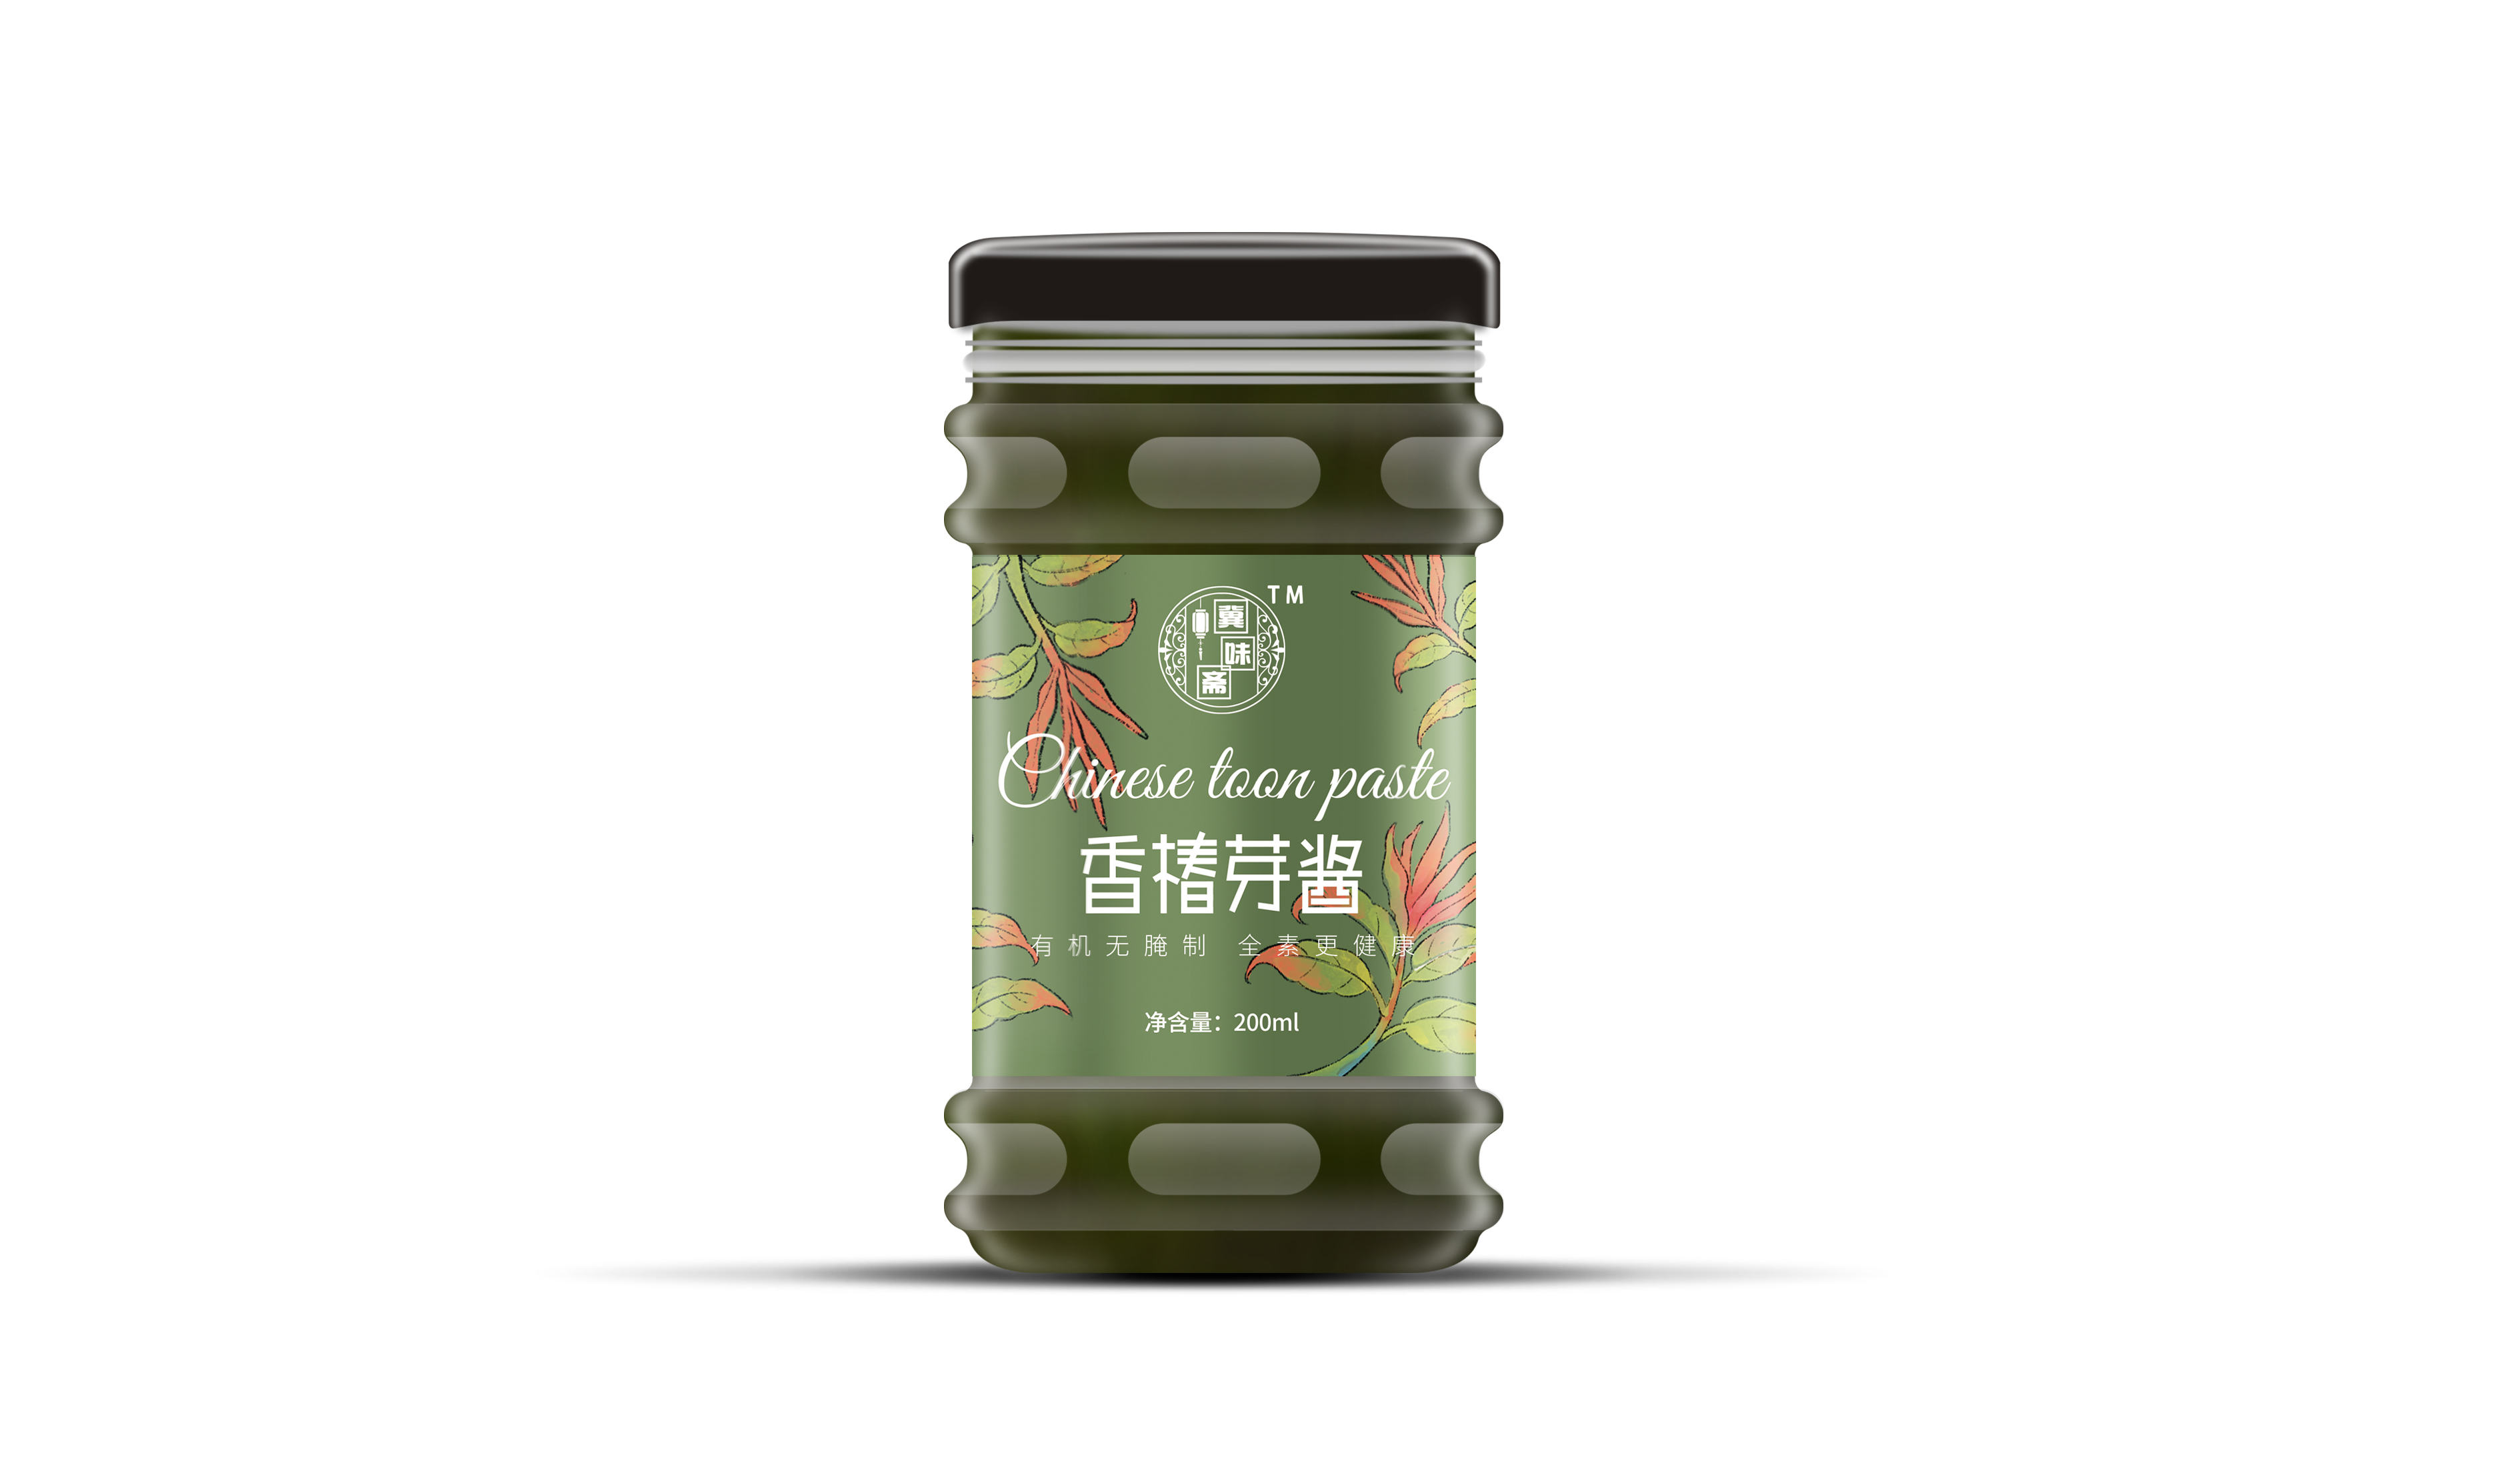 冀味齋香椿芽醬品牌包裝設計